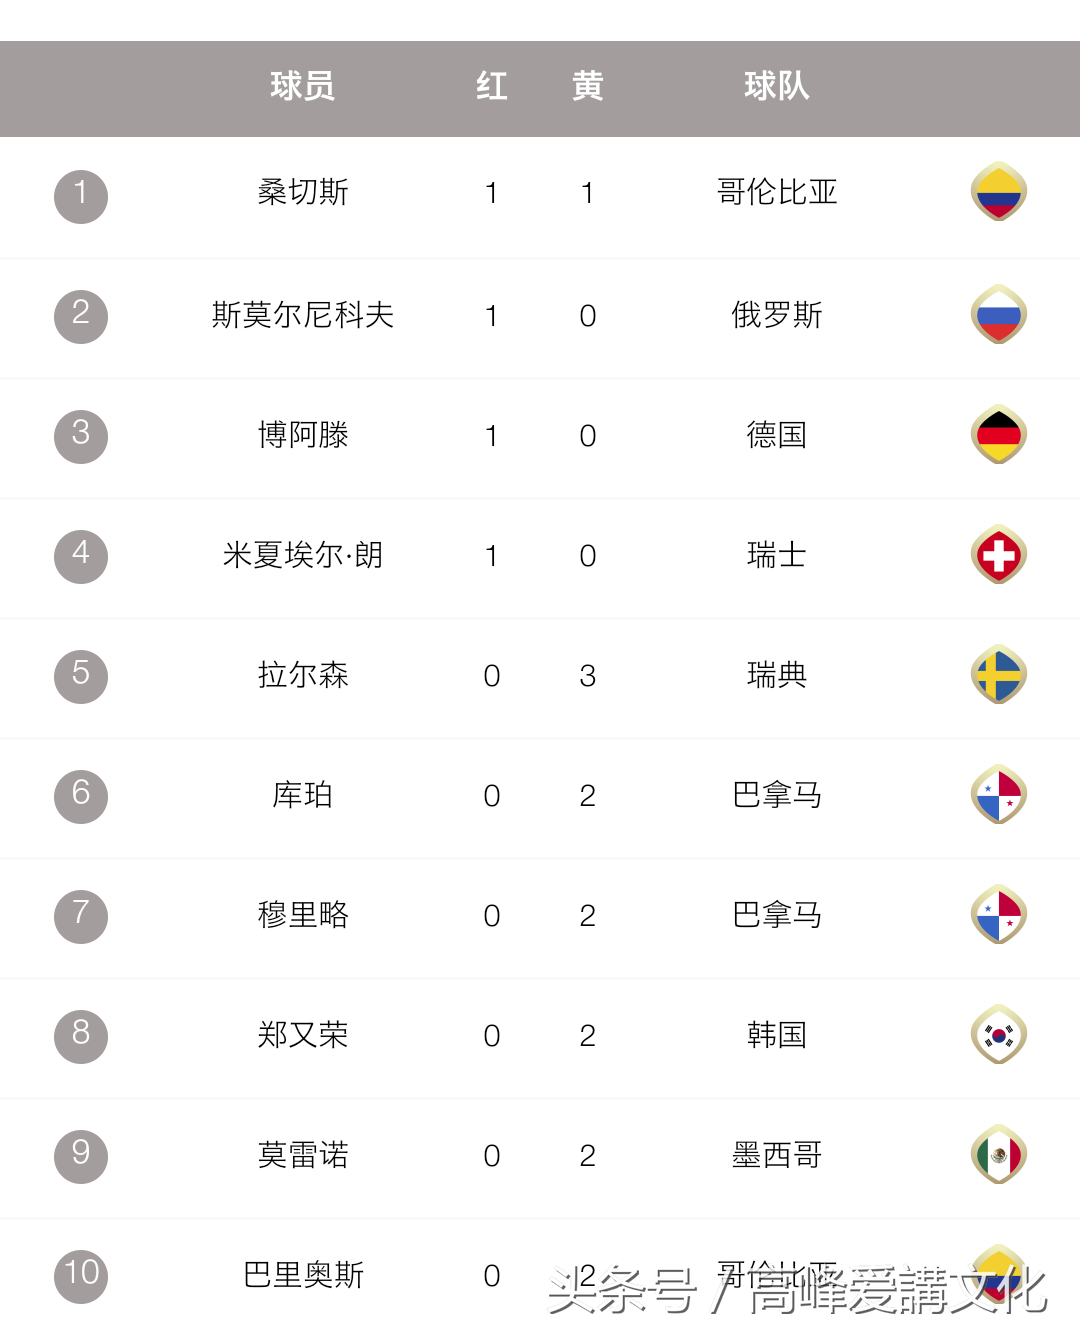 2018世界杯黄牌数小组排名（2018世界杯 红黄牌排行榜）